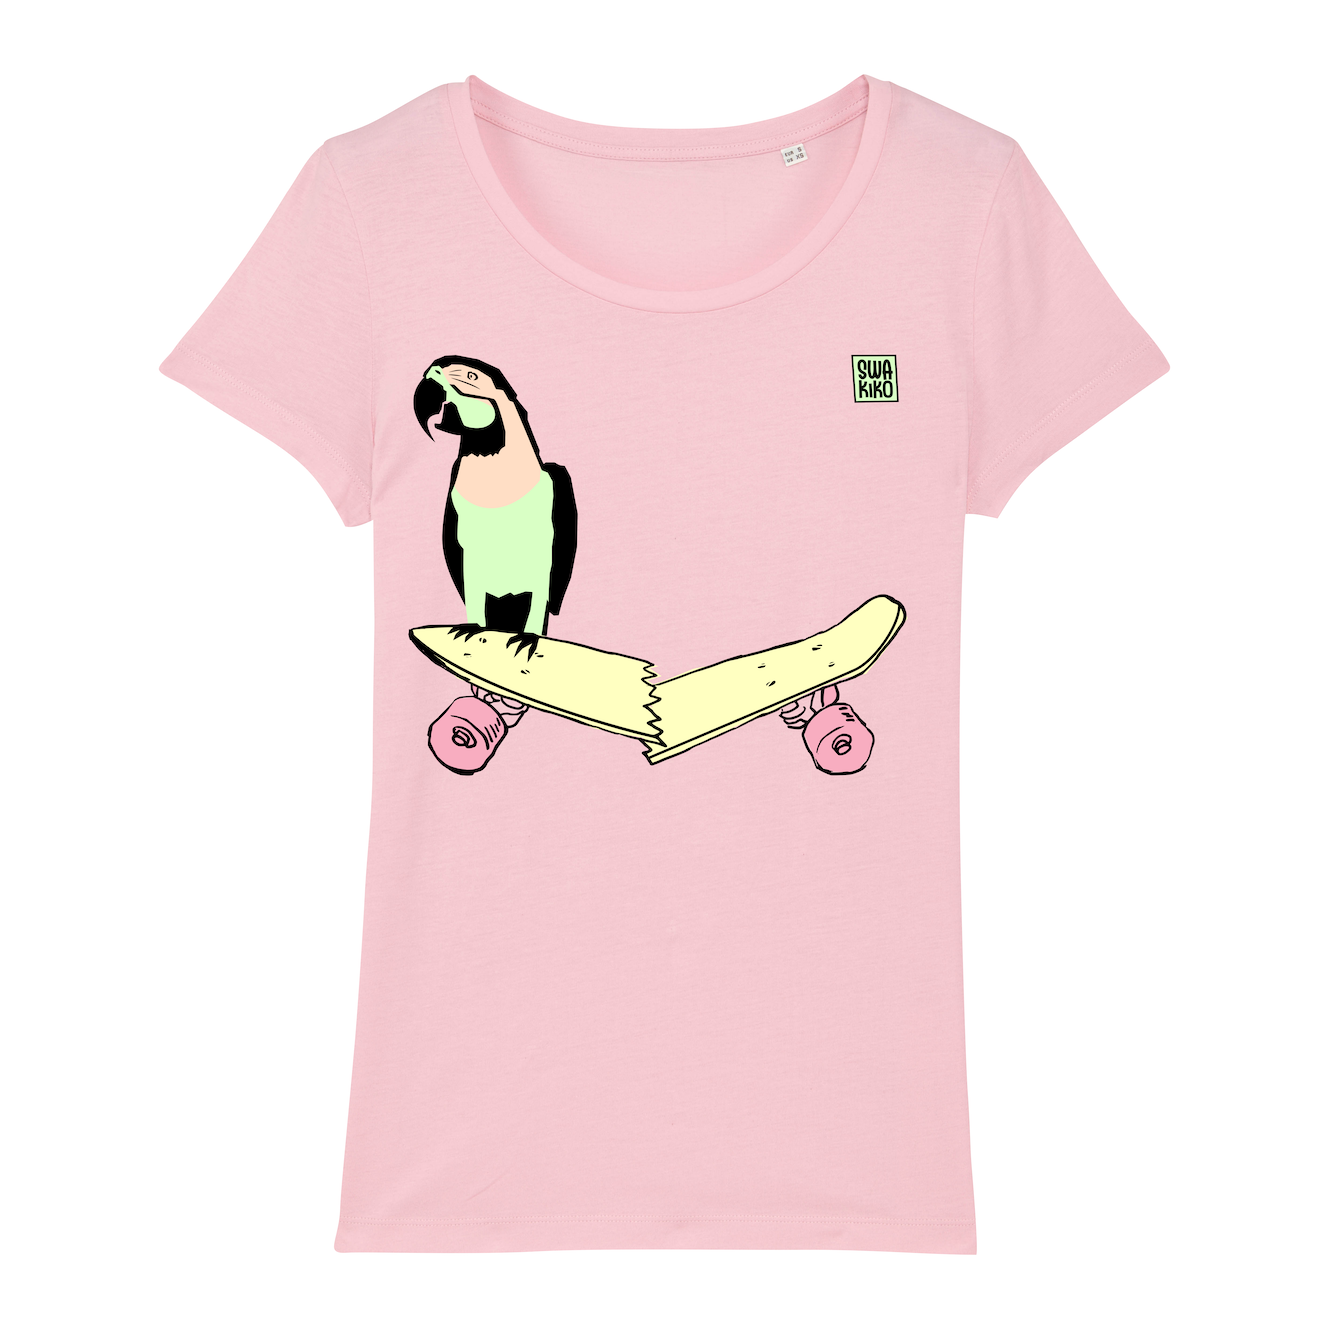 Skate T-shirt women, parrot on skateboard, pink